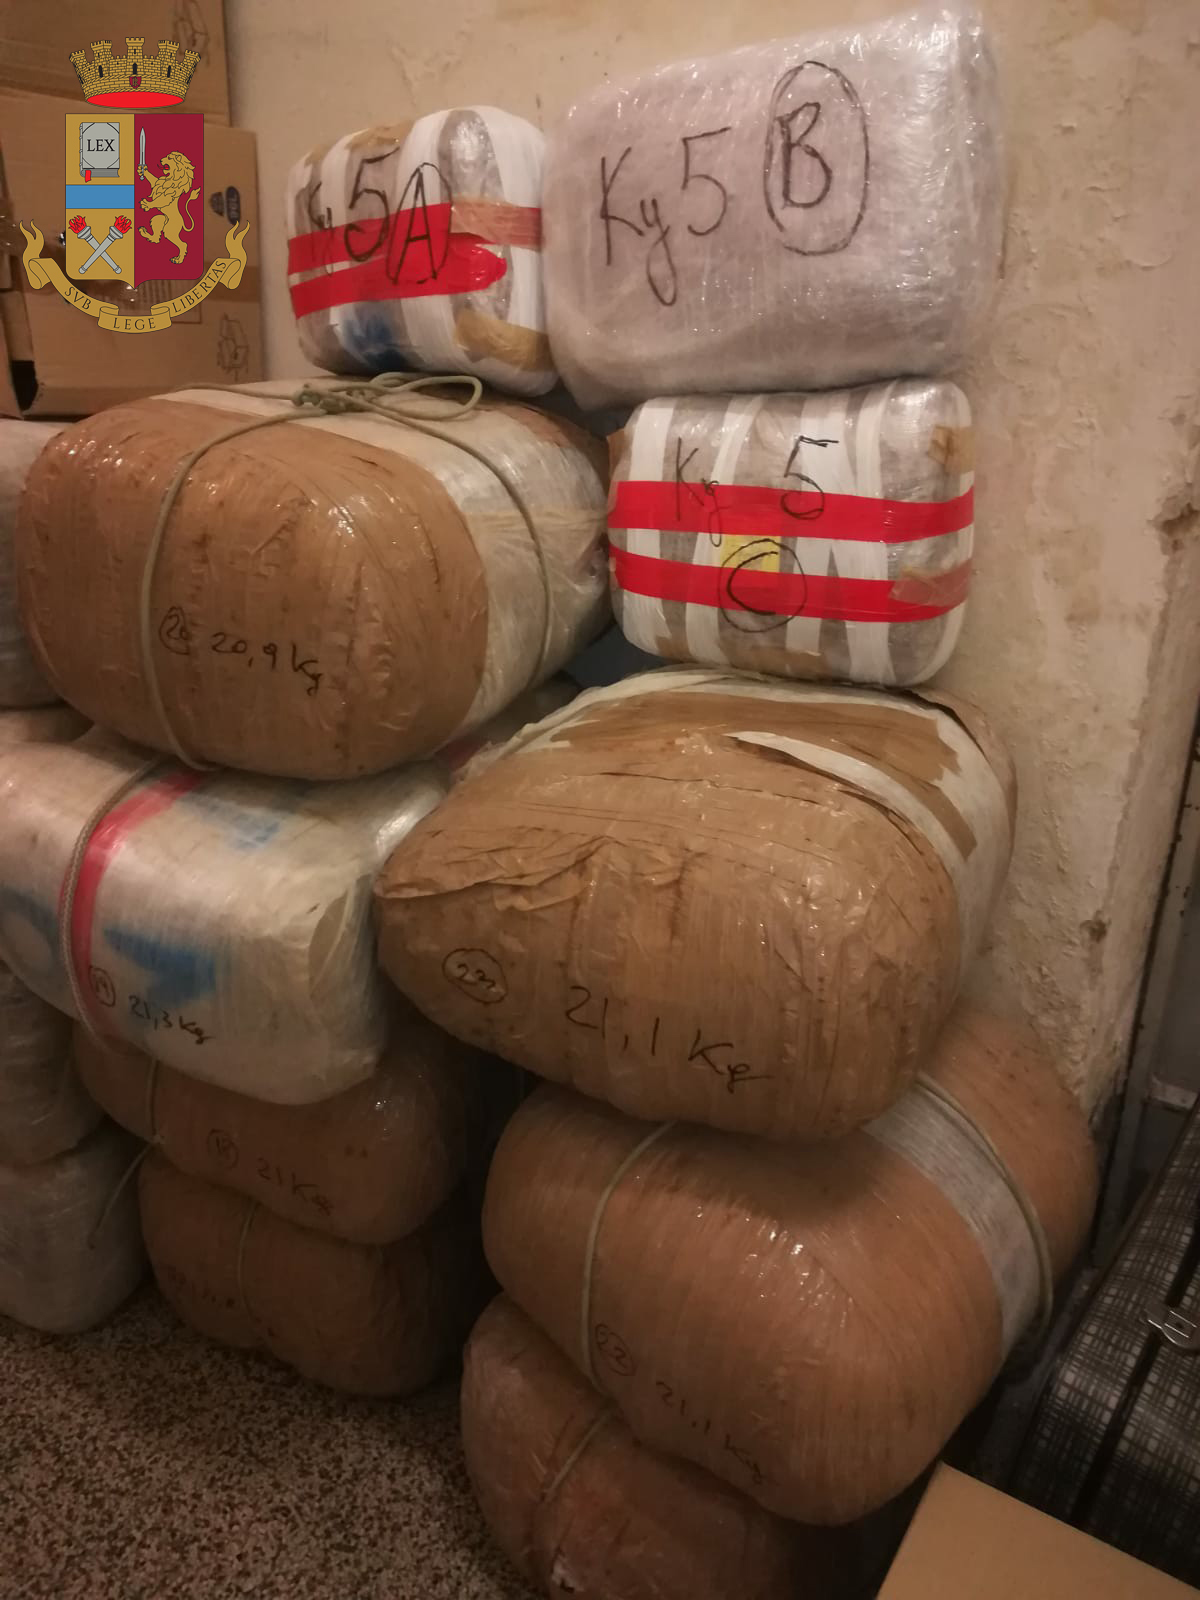 Albanese in manette, trovati 830 kg di droga e una pistola: la segnalazione anonima arrivata tramite YouPol